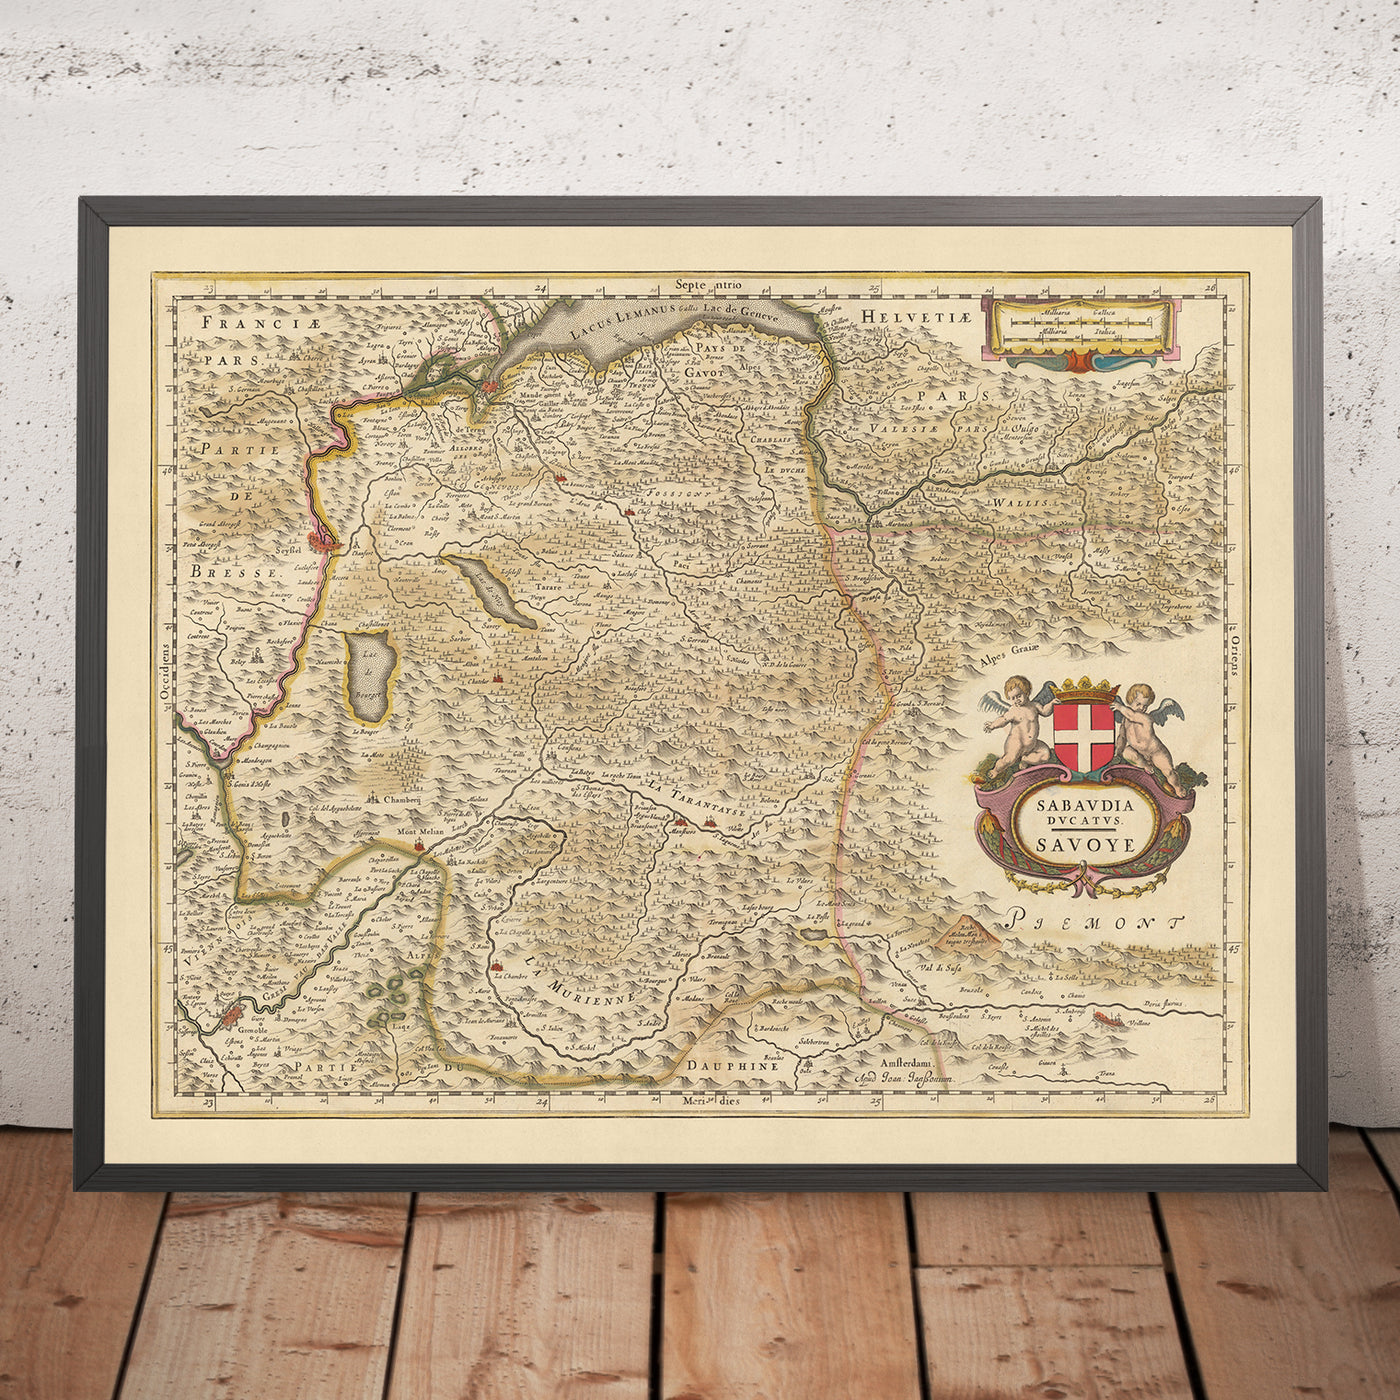 Alte Karte des Herzogtums Savoyen, Frankreich von Visscher, 1690: Genf, Grenoble, Chambéry, Chamonix, Nationalpark Vanoise